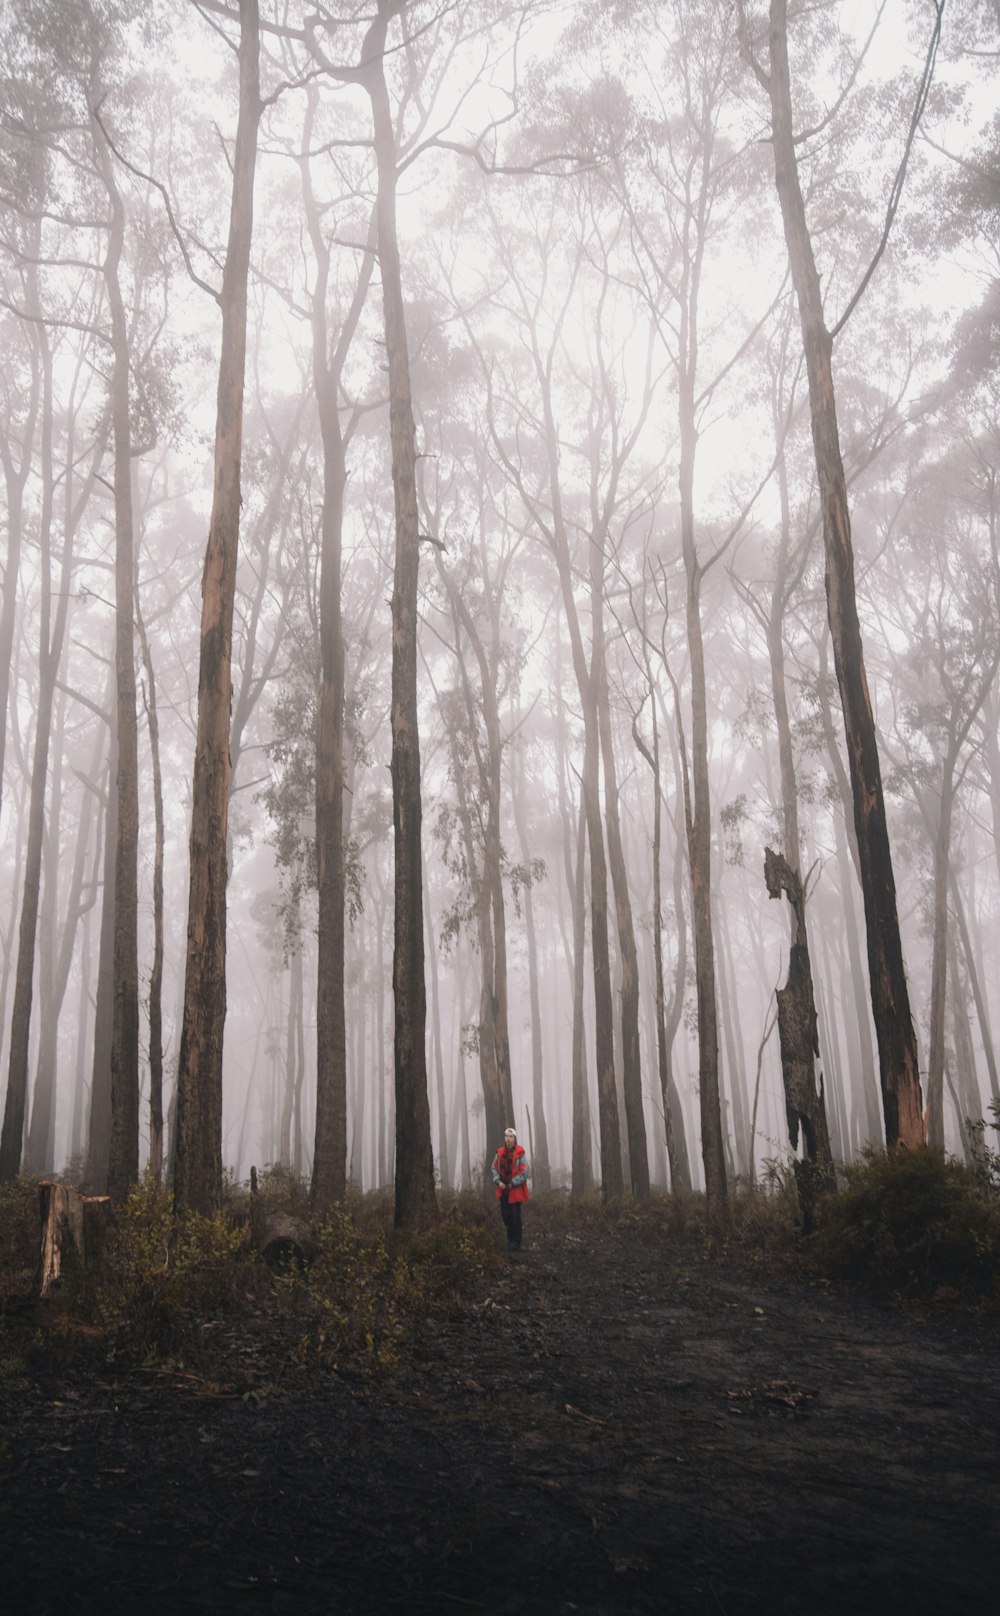 Persona in giacca rossa in piedi nel bosco